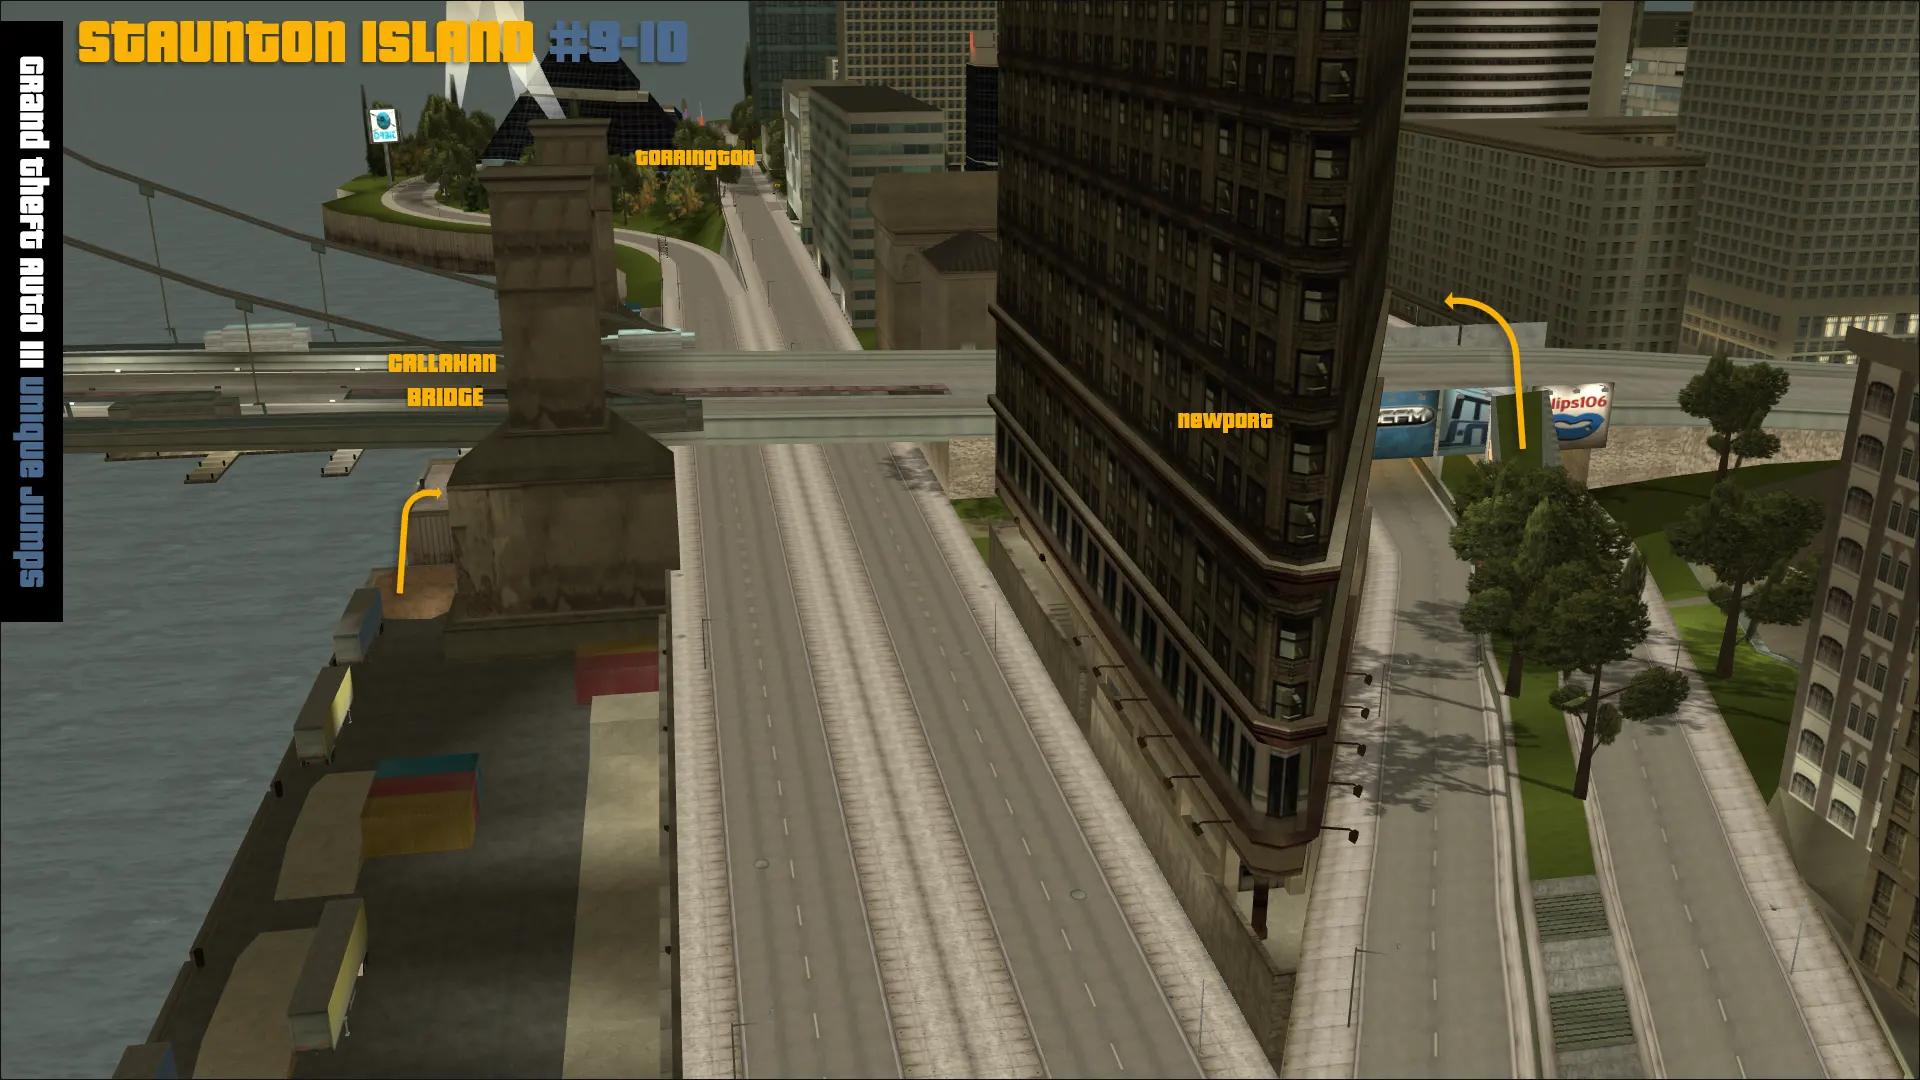 Grand Theft Auto III Stunt Jumps - Staunton Island 1 map.